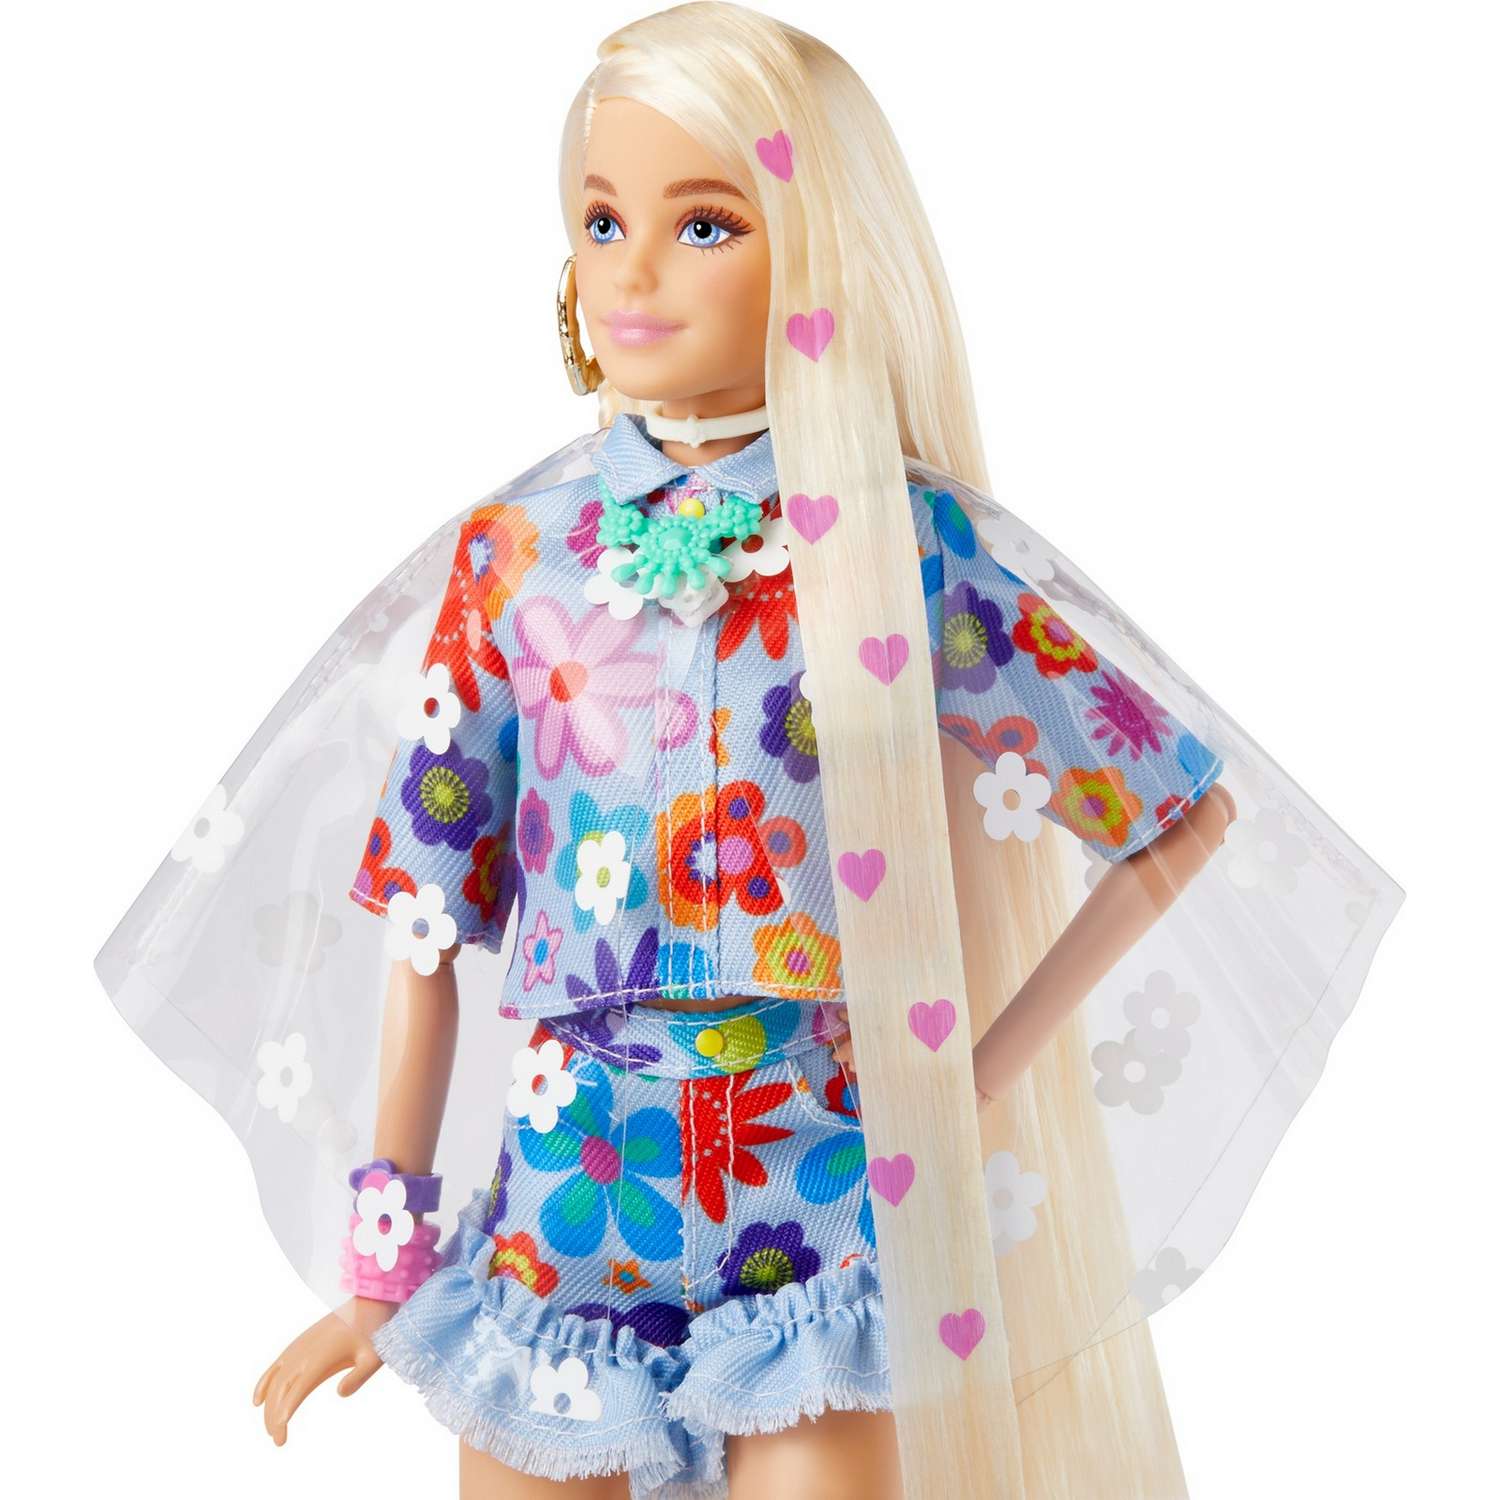 Кукла Barbie Экстра в одежде с цветочным принтом HDJ45 HDJ45 - фото 7